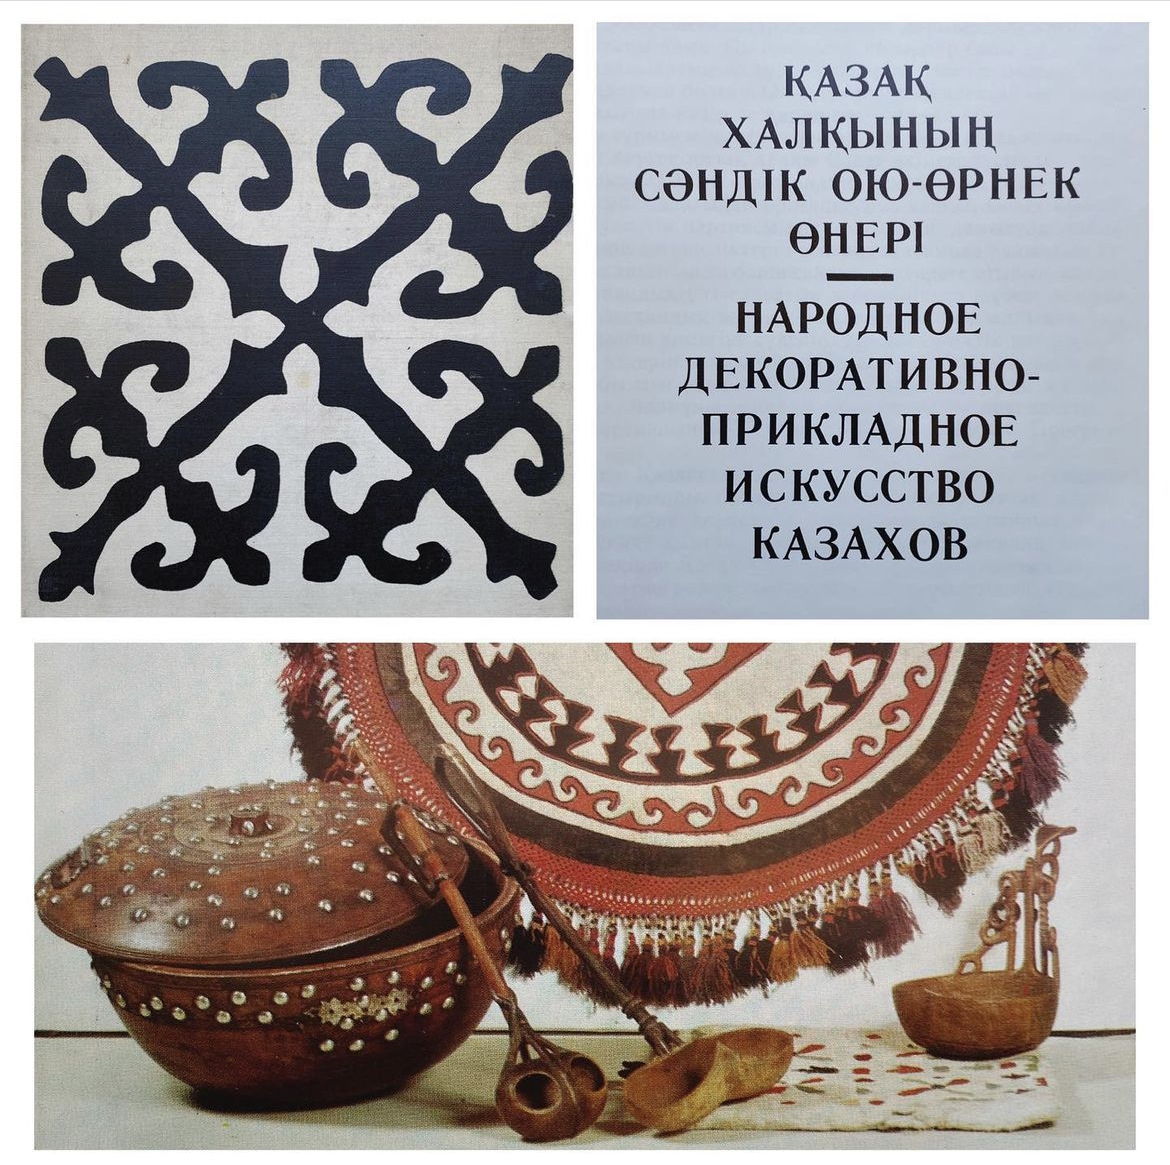 Купить книгу Н.-Б. Нурмухаммедова (Народное декоративно-прикладное искусство казахов)